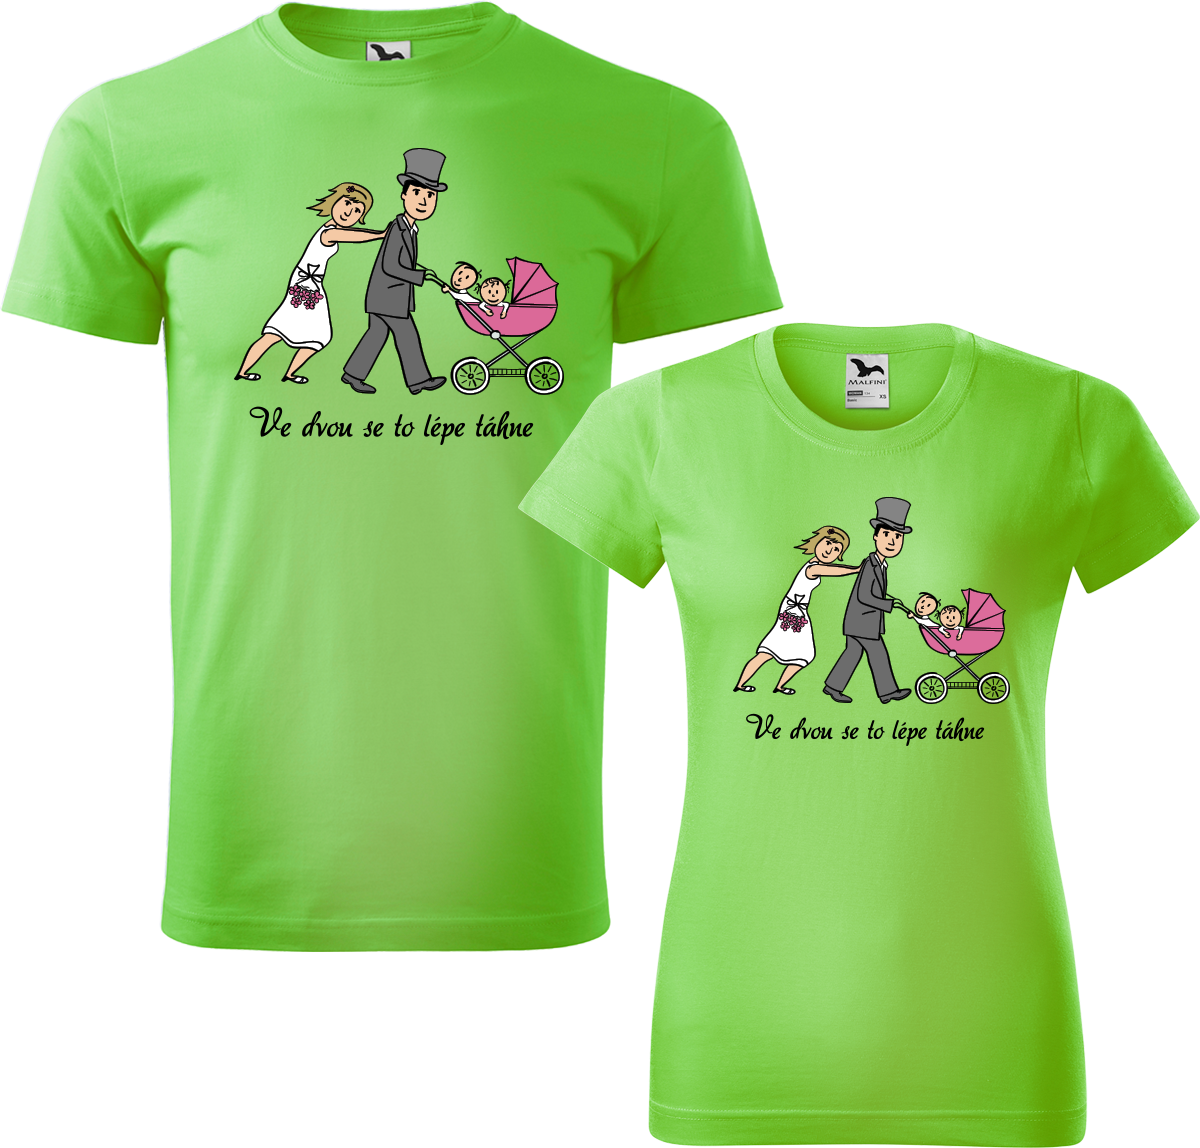 Trička pro páry - Ve dvou se to lépe táhne (kočárek) Barva: Apple Green (92), Velikost dámské tričko: S, Velikost pánské tričko: S